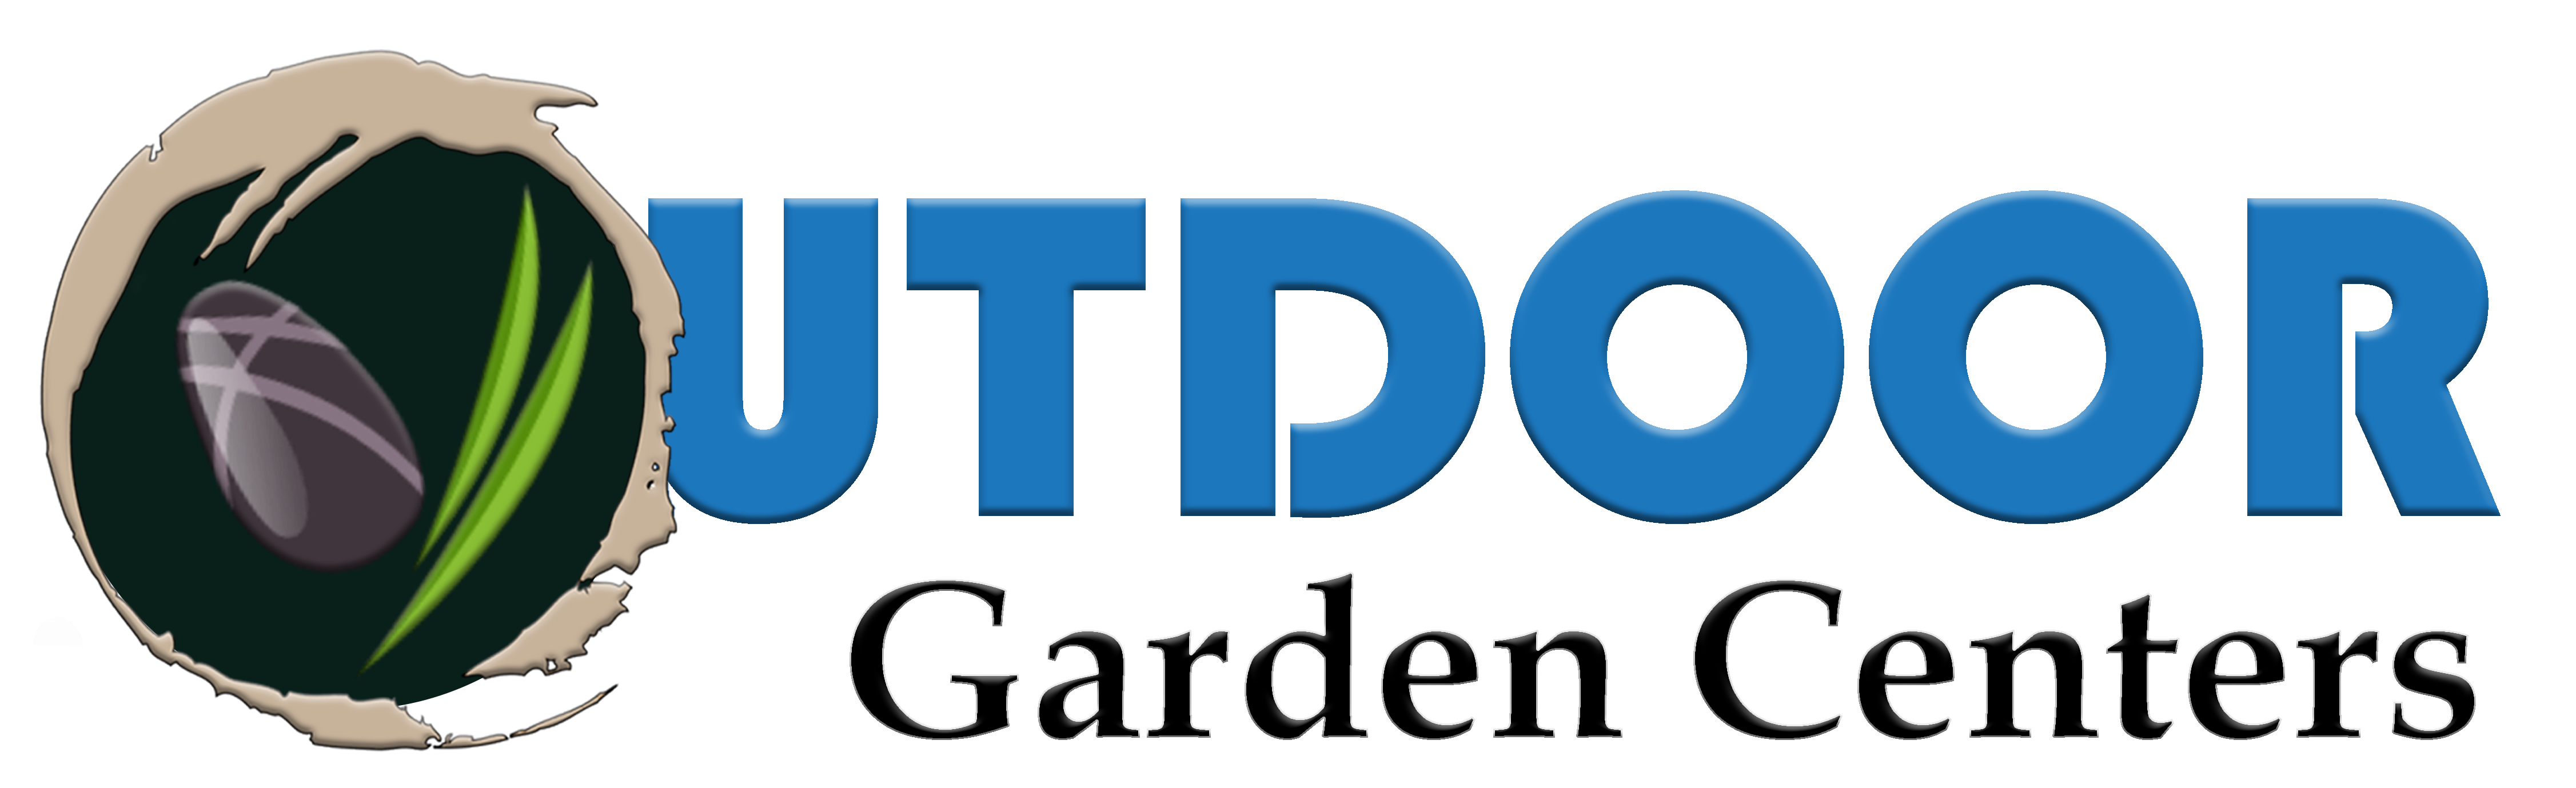 Garden Center Services Logo